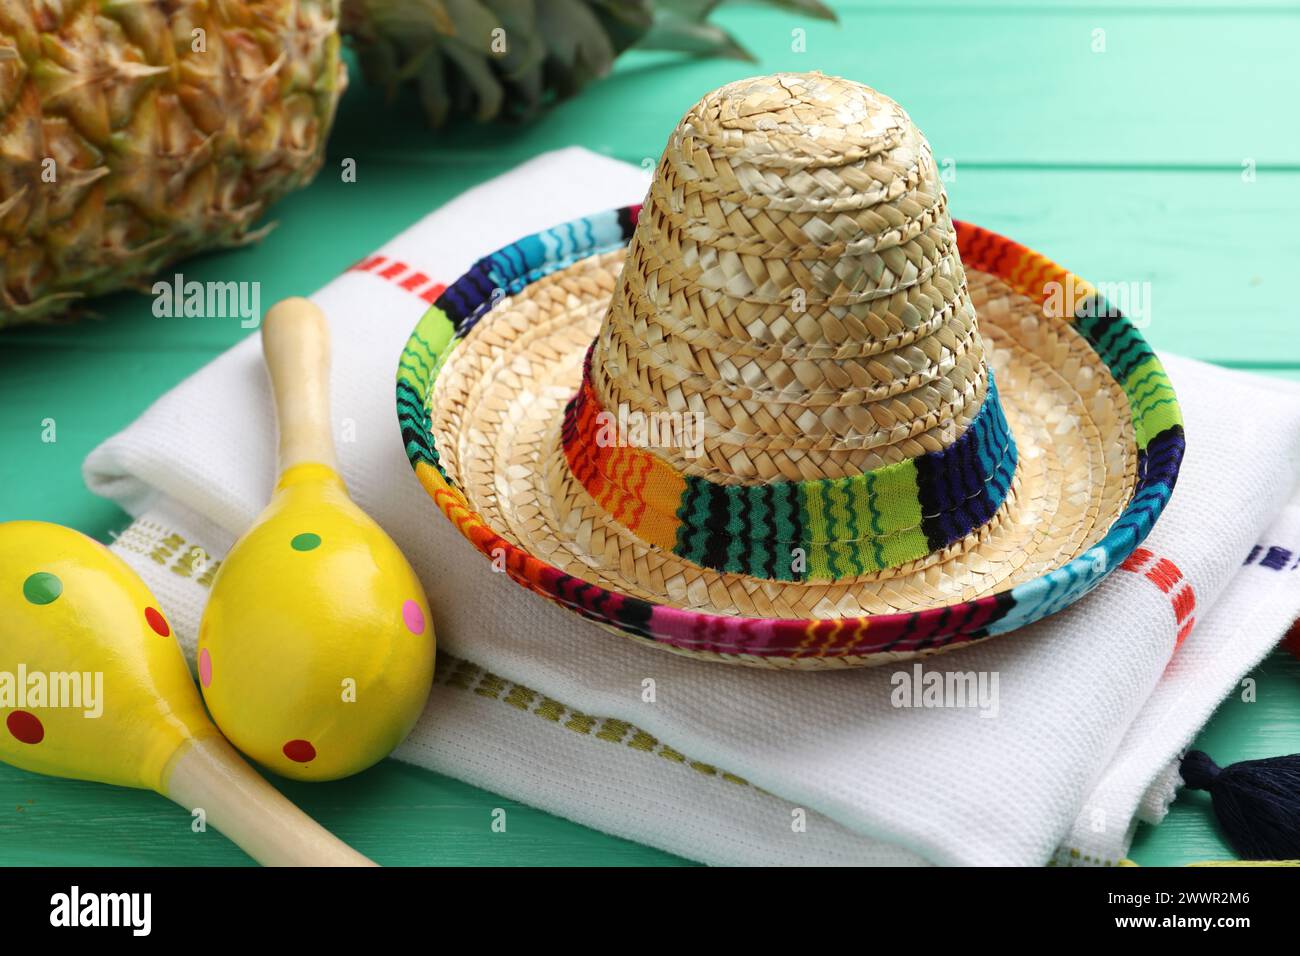 Chapeau sombrero mexicain, maracas et poncho sur table en bois turquoise Banque D'Images